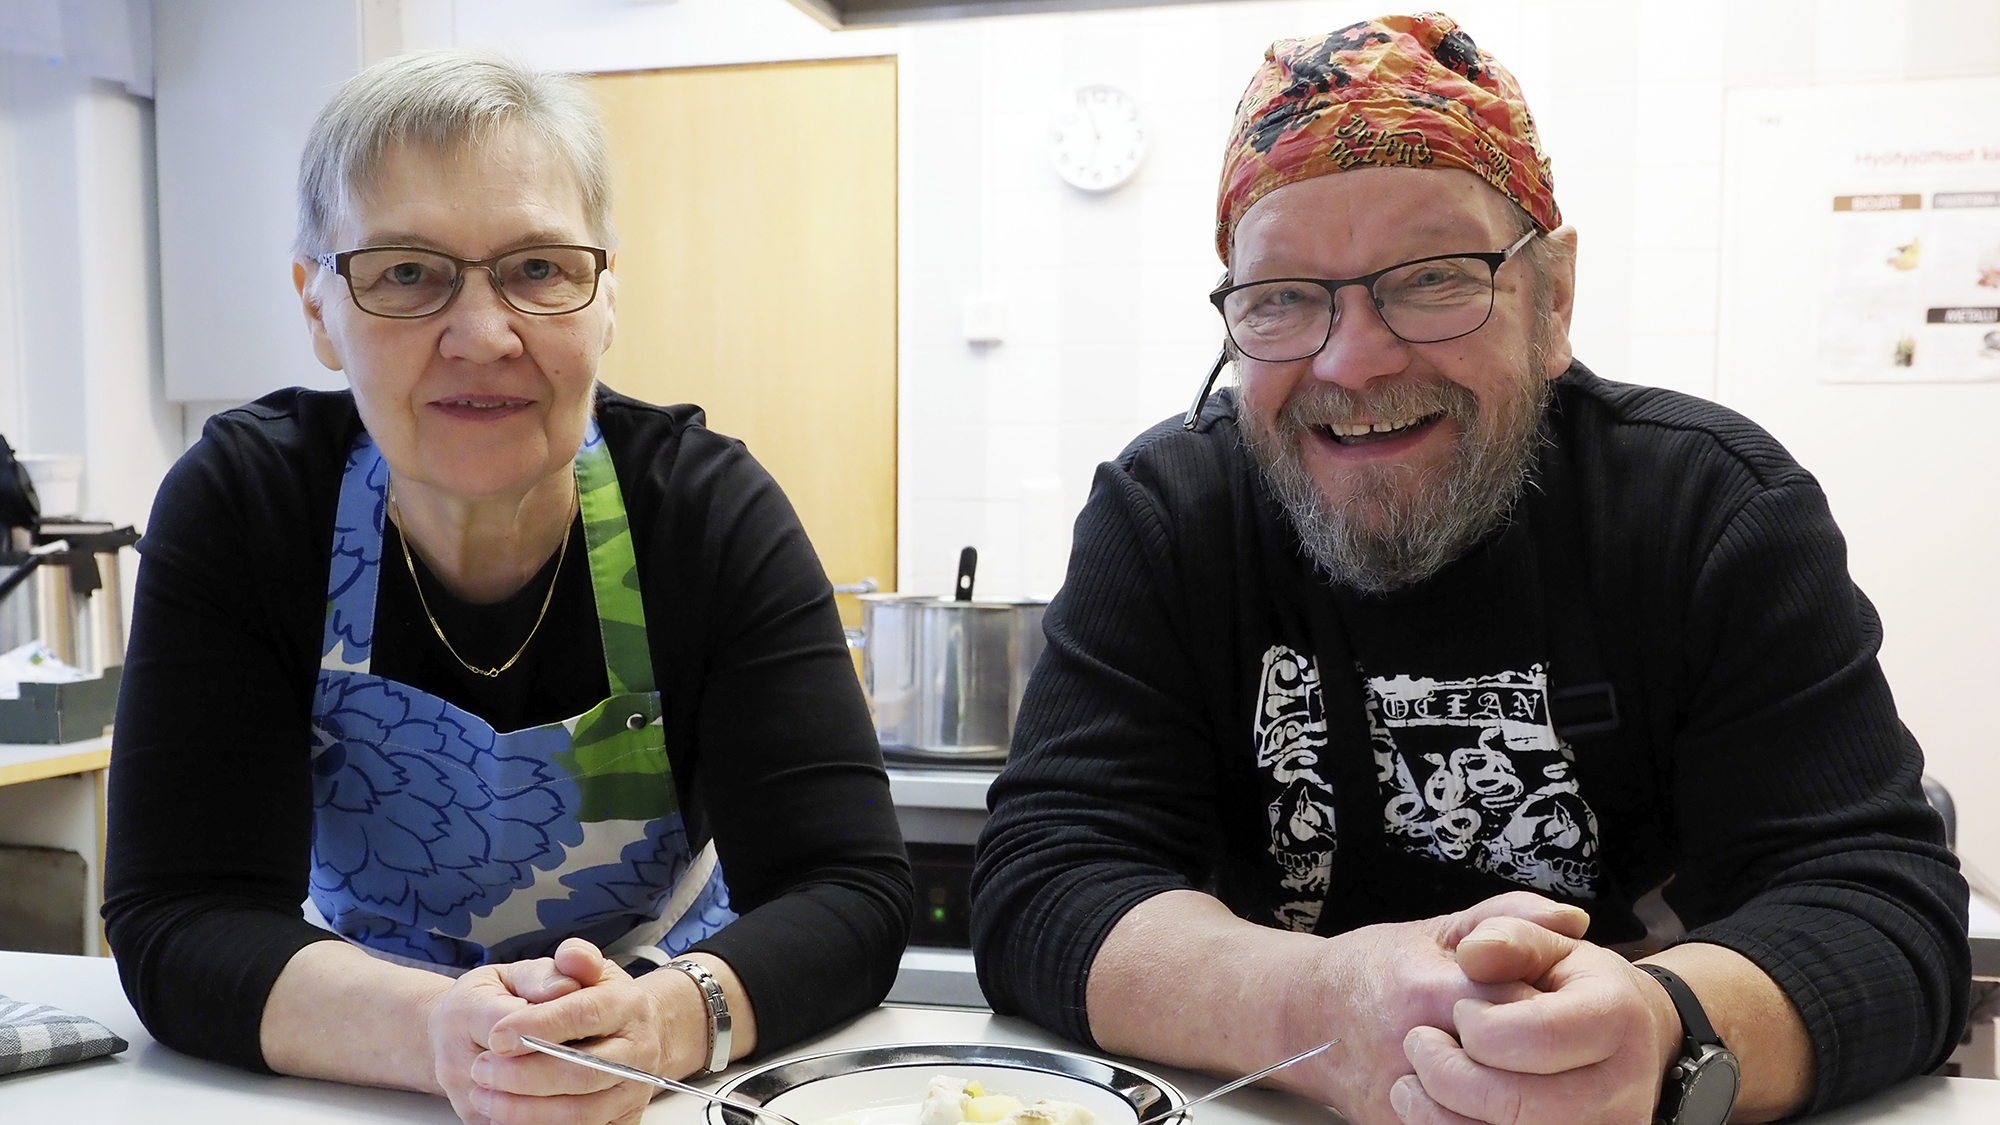 Aino Kakkonen ja Hannu Soikkeli ovat pöydän äärellä. Pöydällä on kalakeittolautanen.